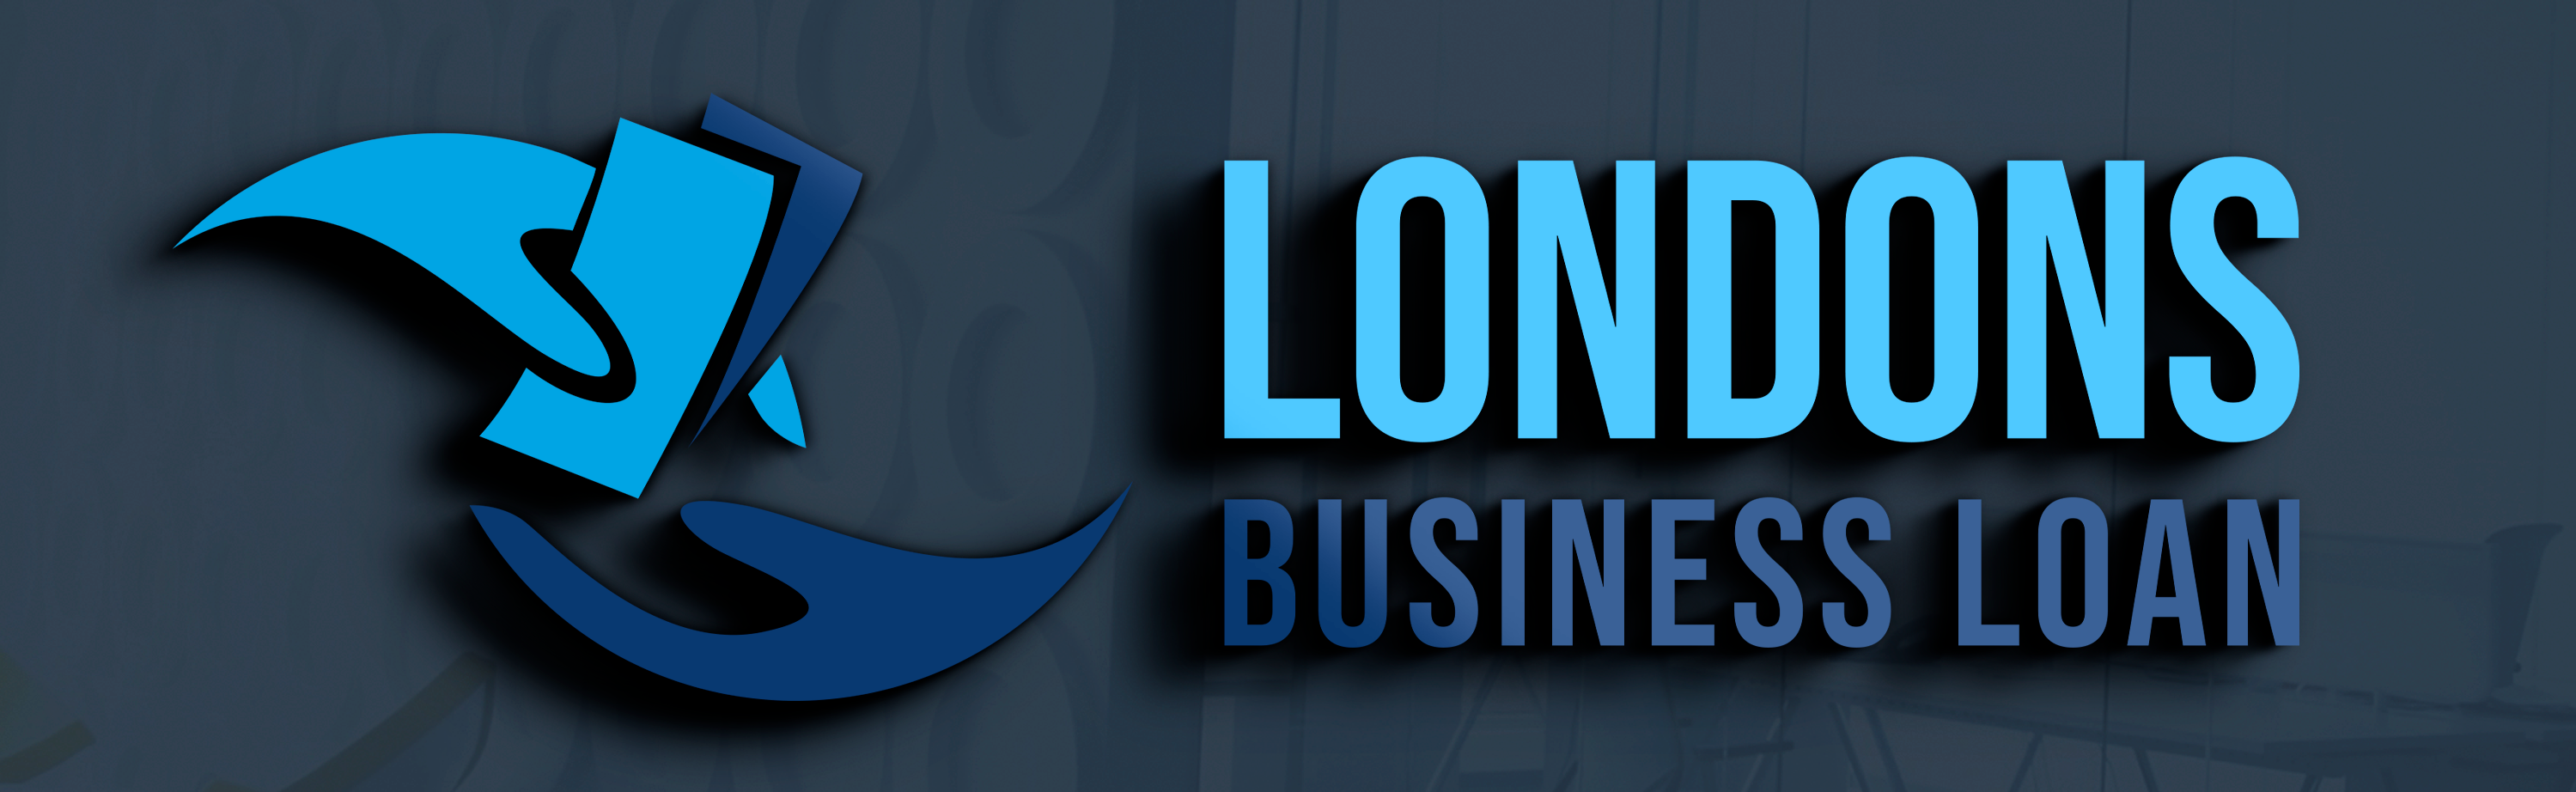 Londons Business Loans